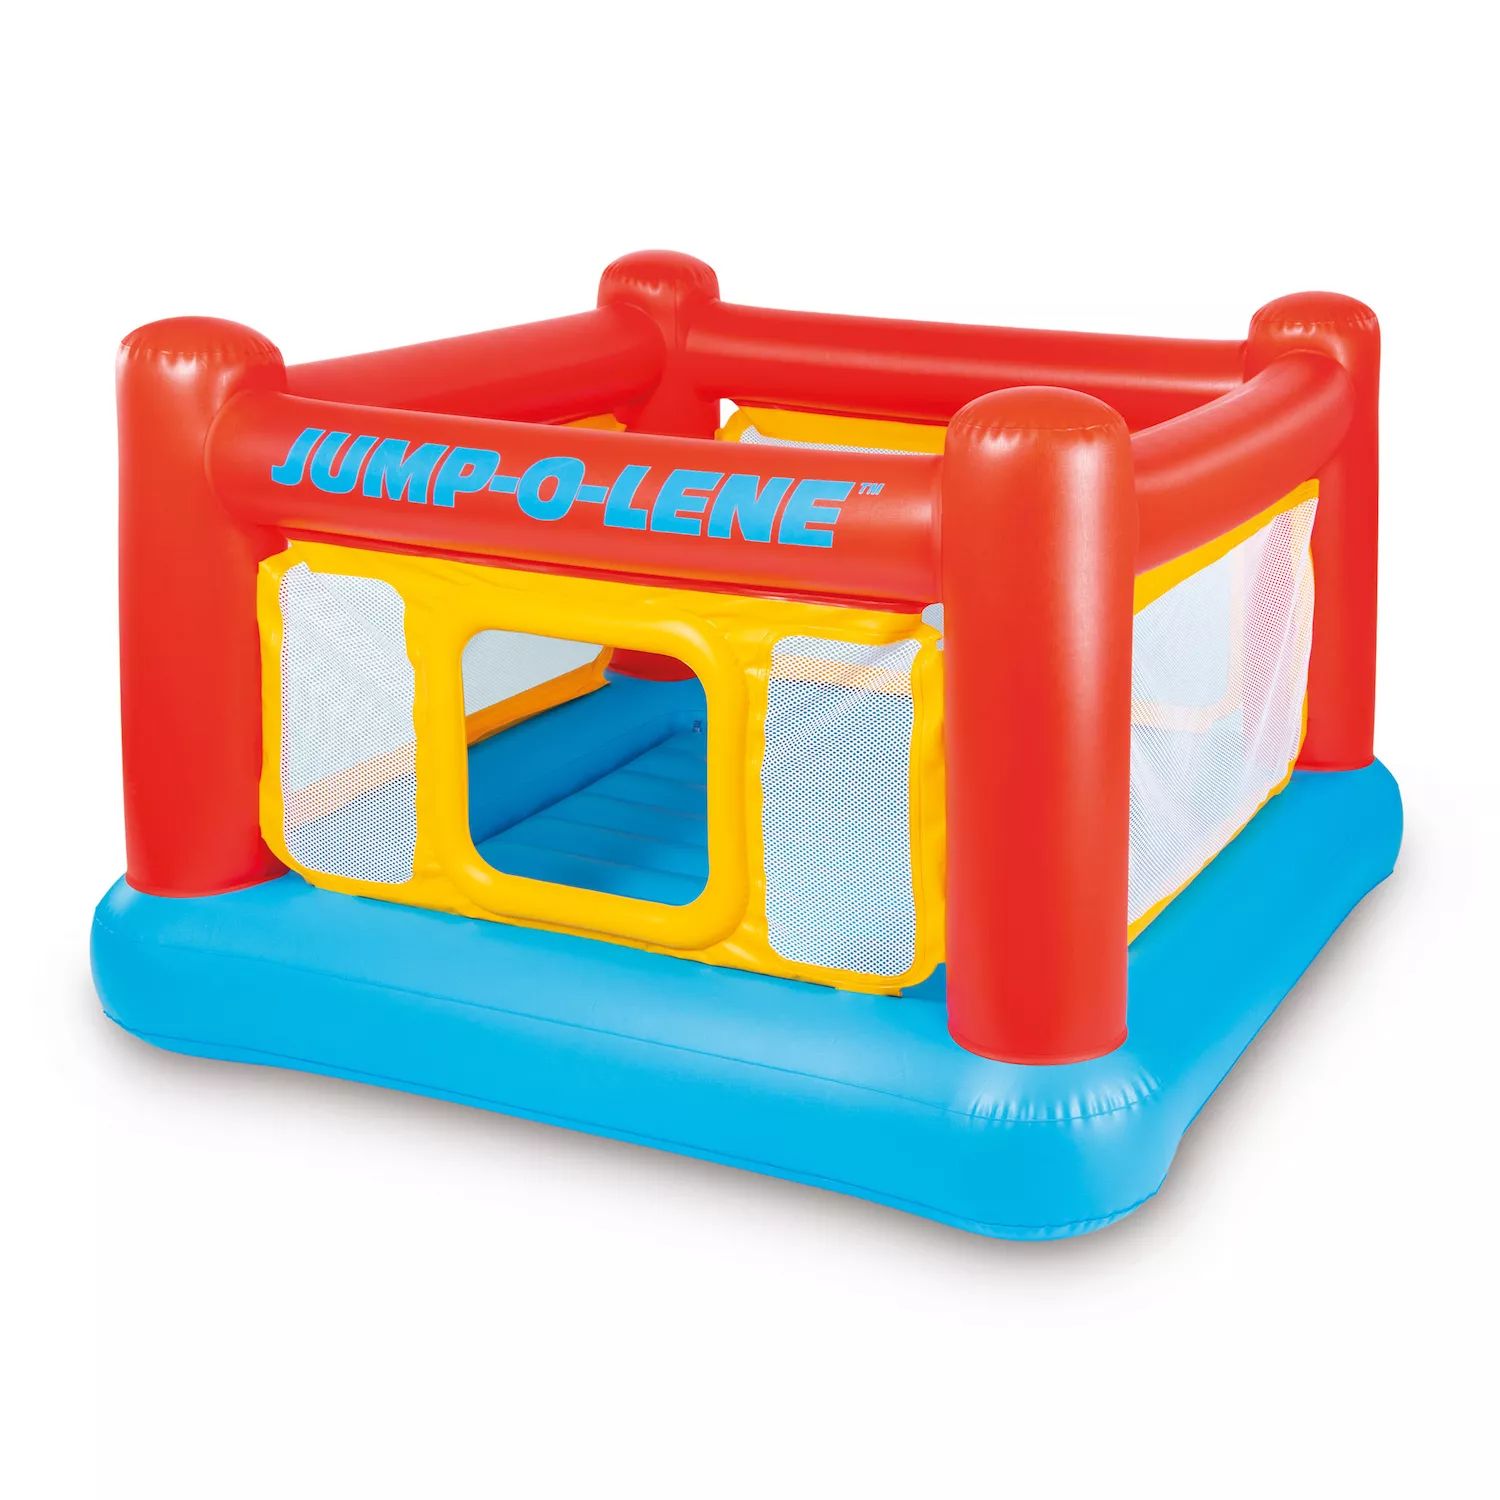 Надувной игровой домик Intex Jump-O-Lene, батут для детей от 3 до 6 лет Intex батут надувной комплекс intex jump o lene 48260